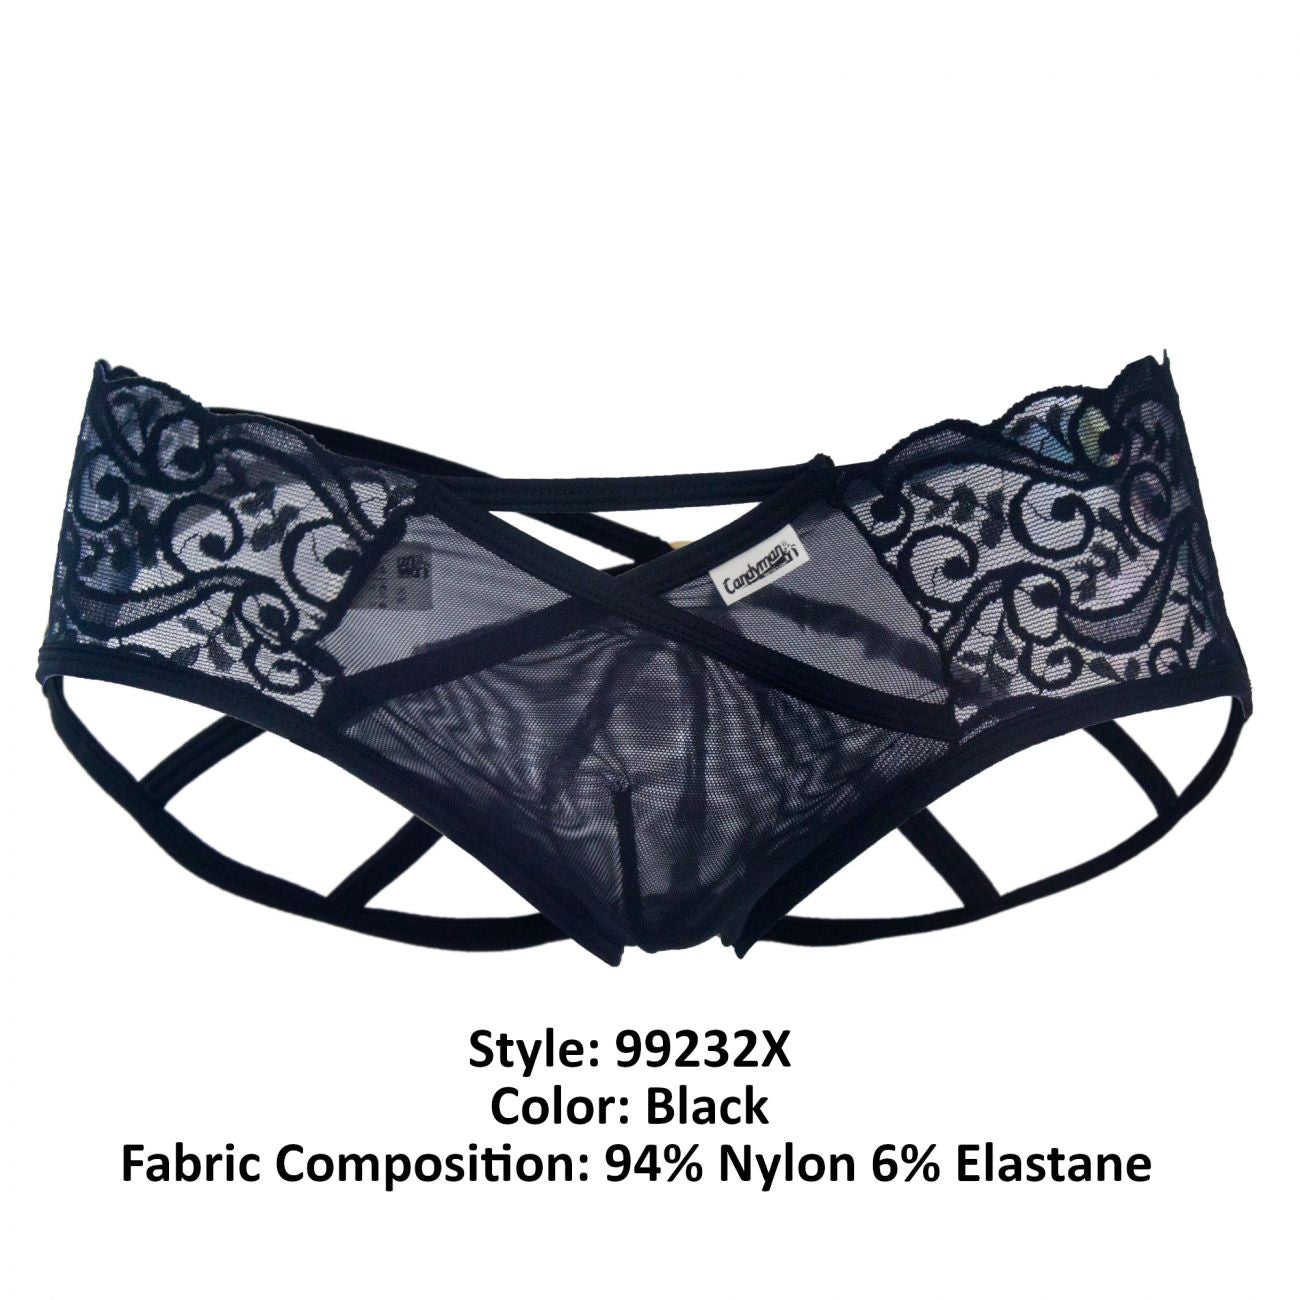 SALE - CandyMan 99232X Sexy Lace Jockstrap Black Plus Sizes